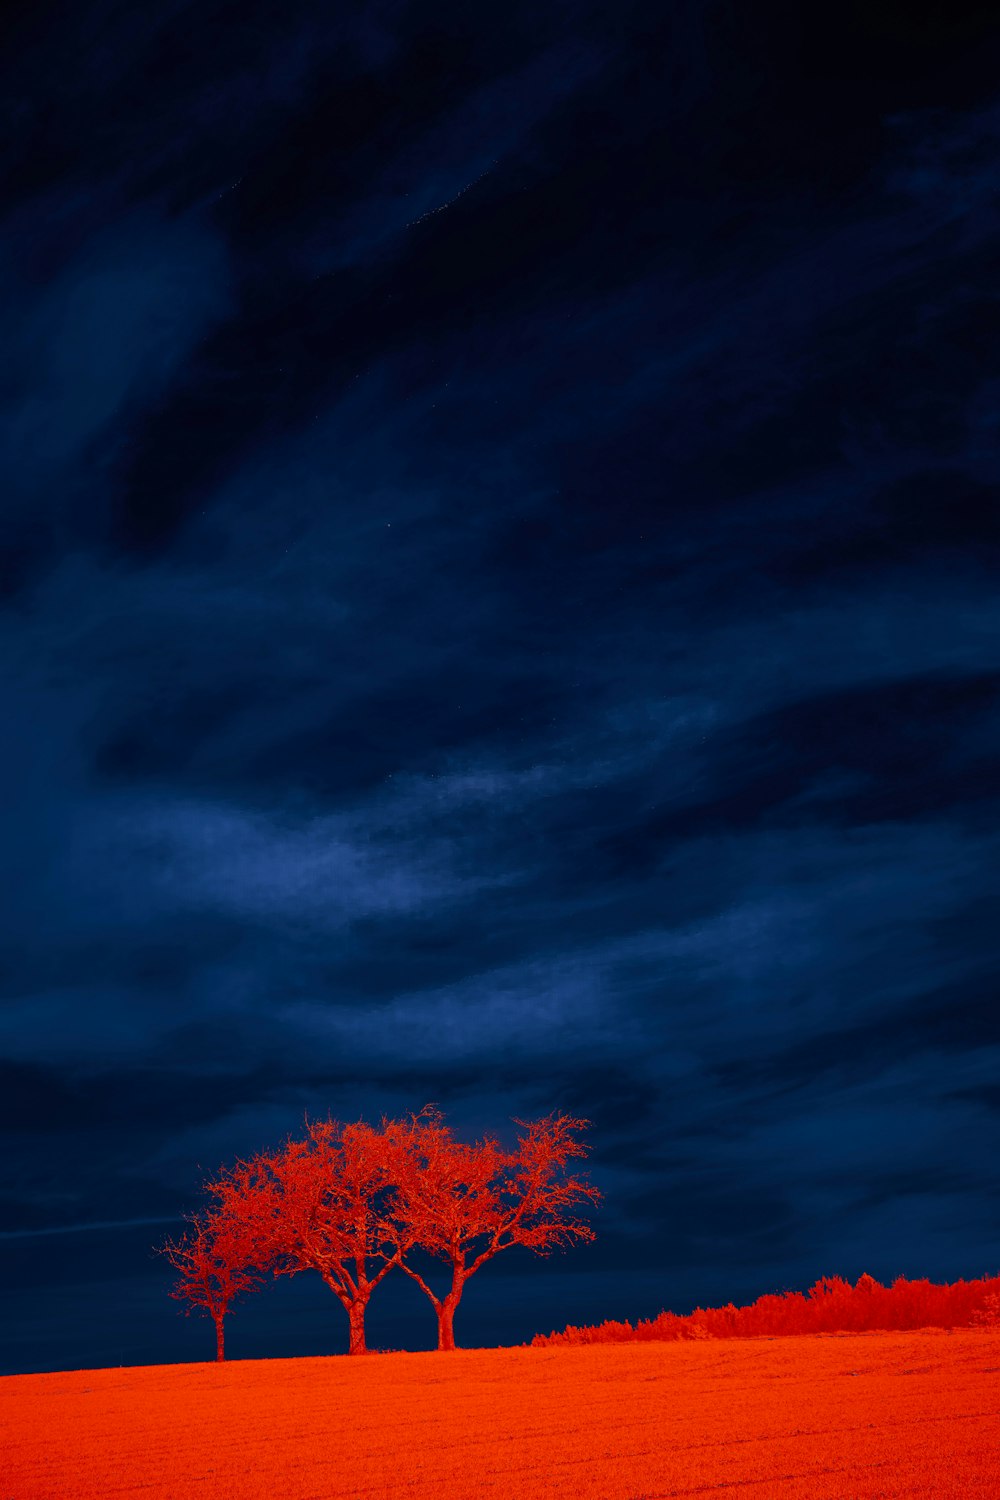 푸른 하늘 아래 붉은 잎 나무